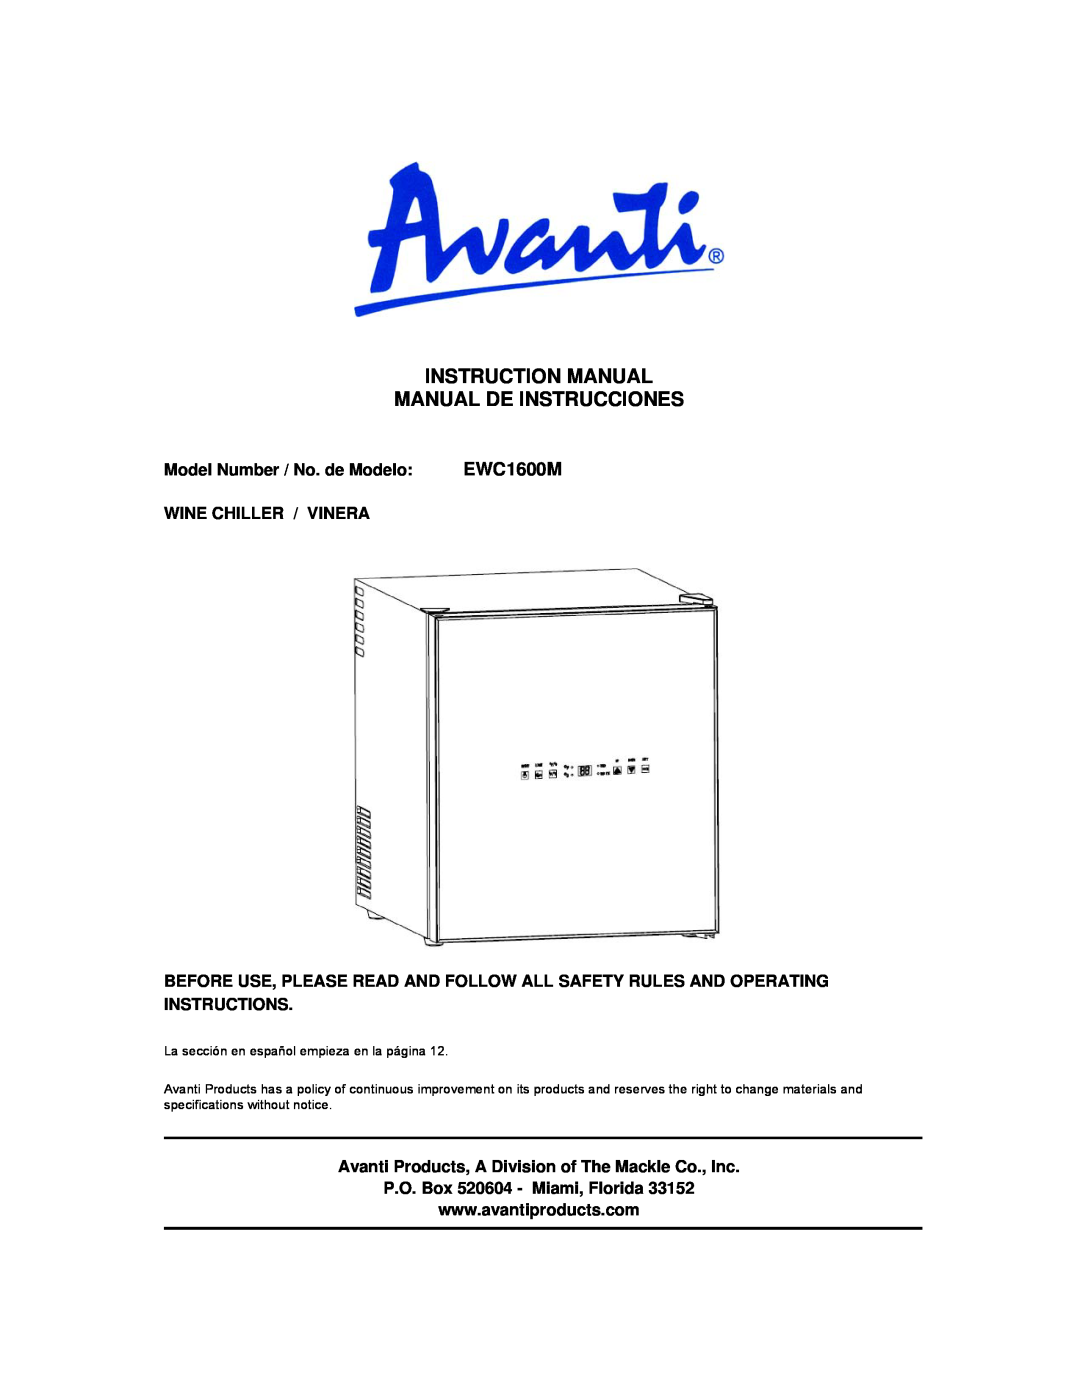 Avanti EWC1600M instruction manual Instruction Manual Manual De Instrucciones, Model Number / No. de Modelo 